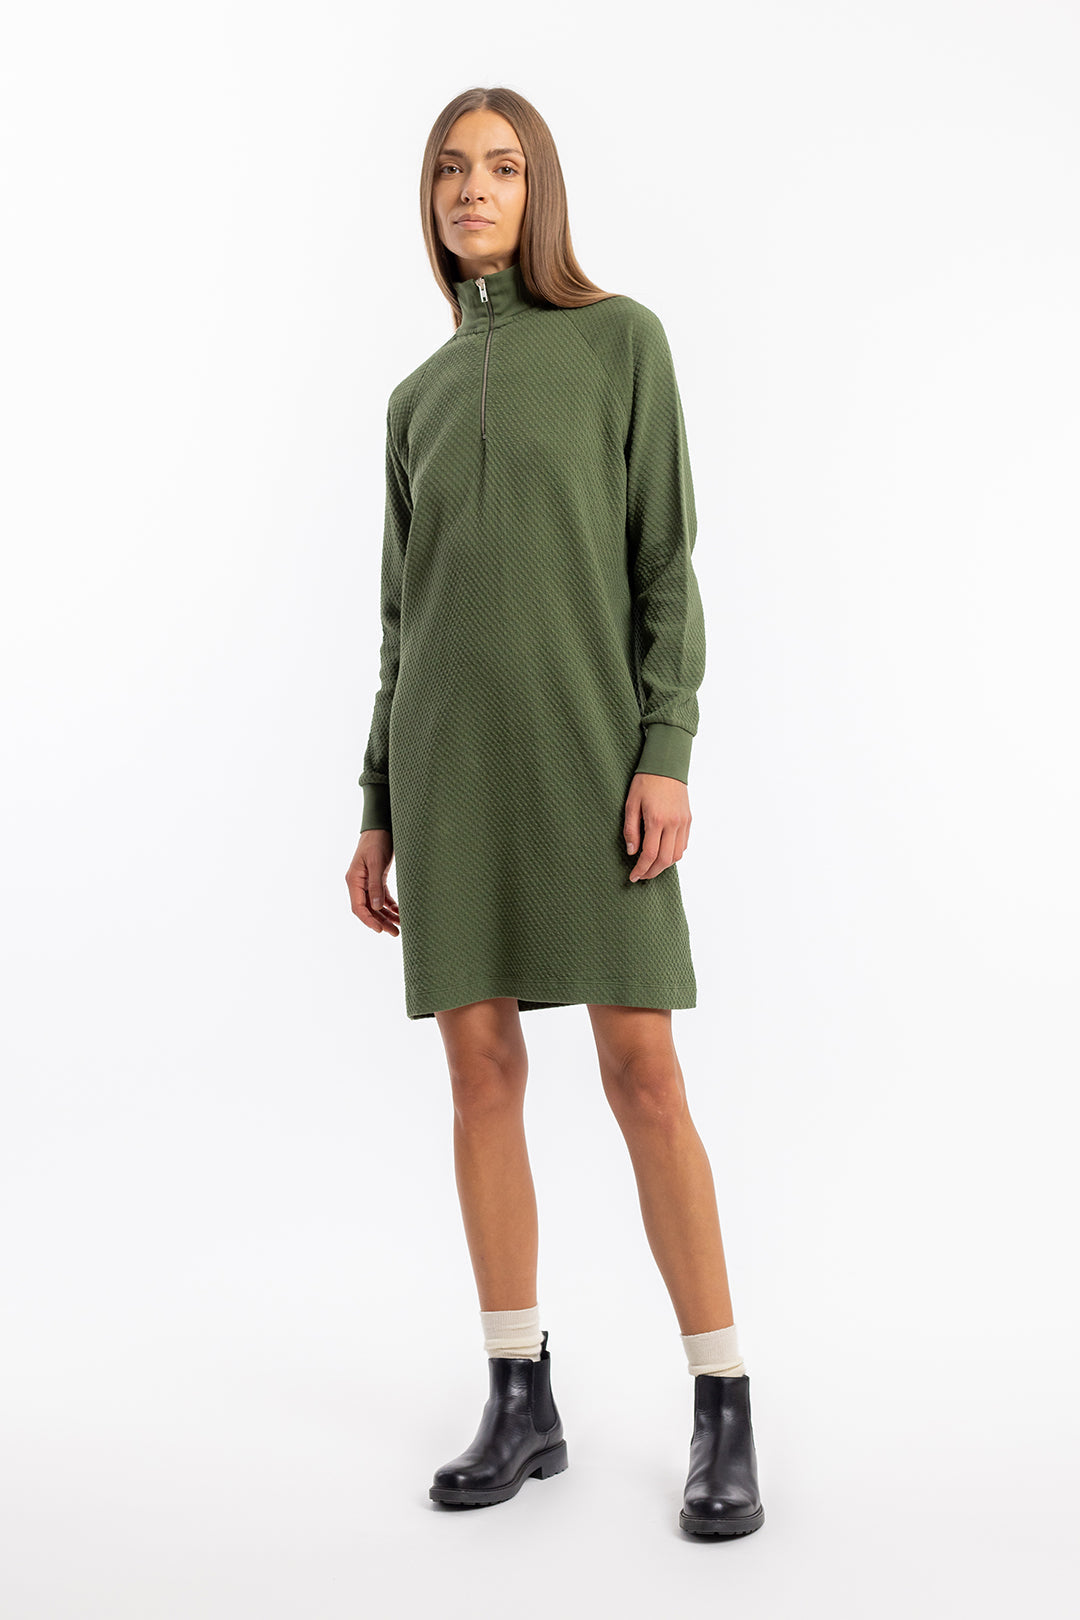 Robe sweat-shirt verte en coton 100% biologique de Rotholz